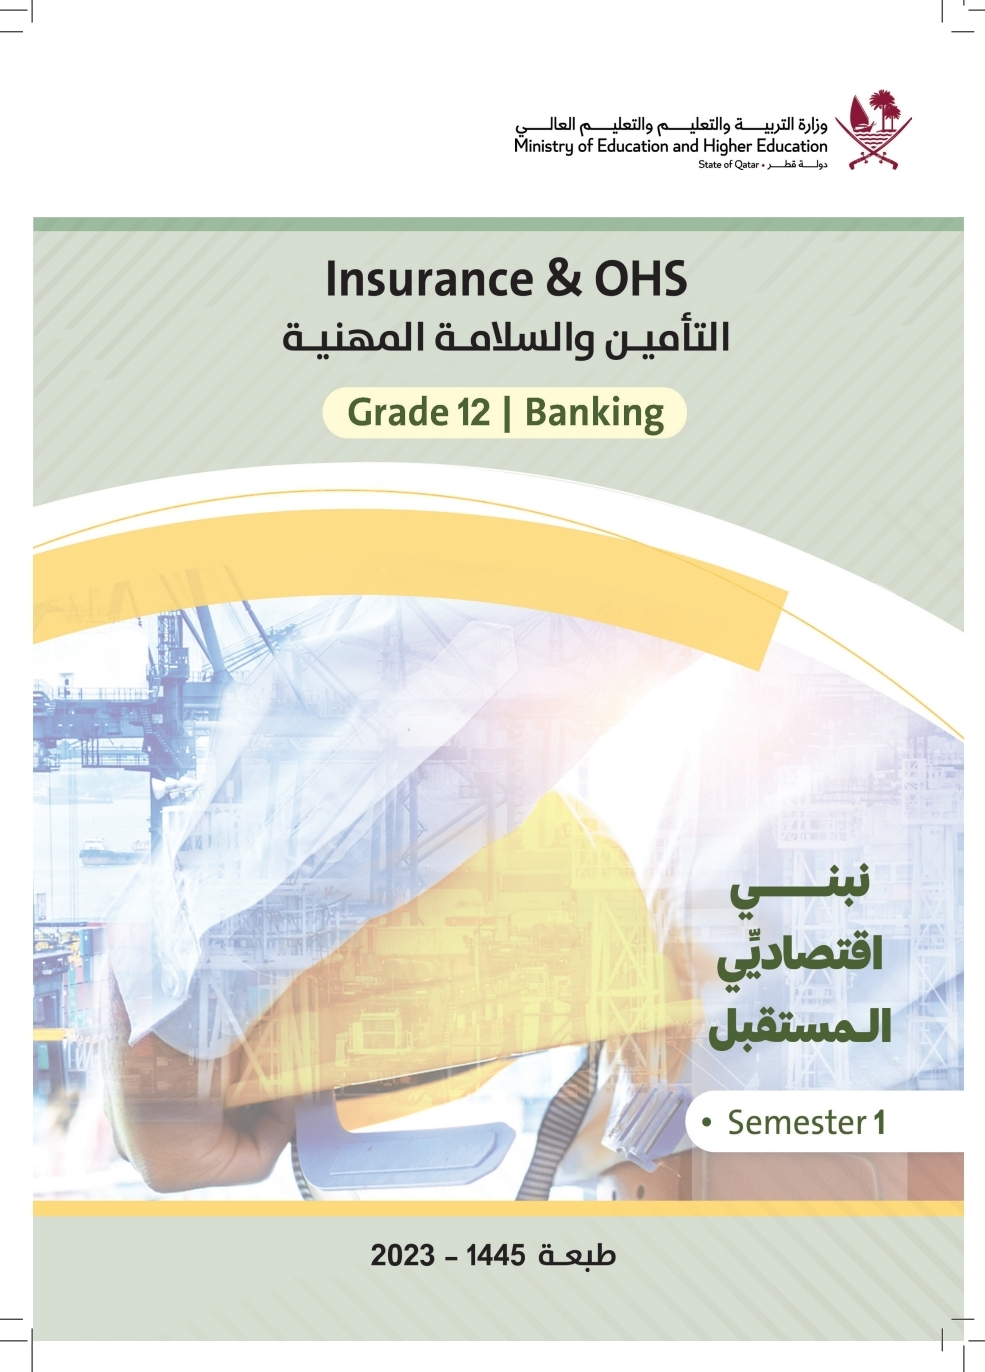 كتاب التأمين وسلامة المهنية للمستوى الثاني عشر الفصل الأول